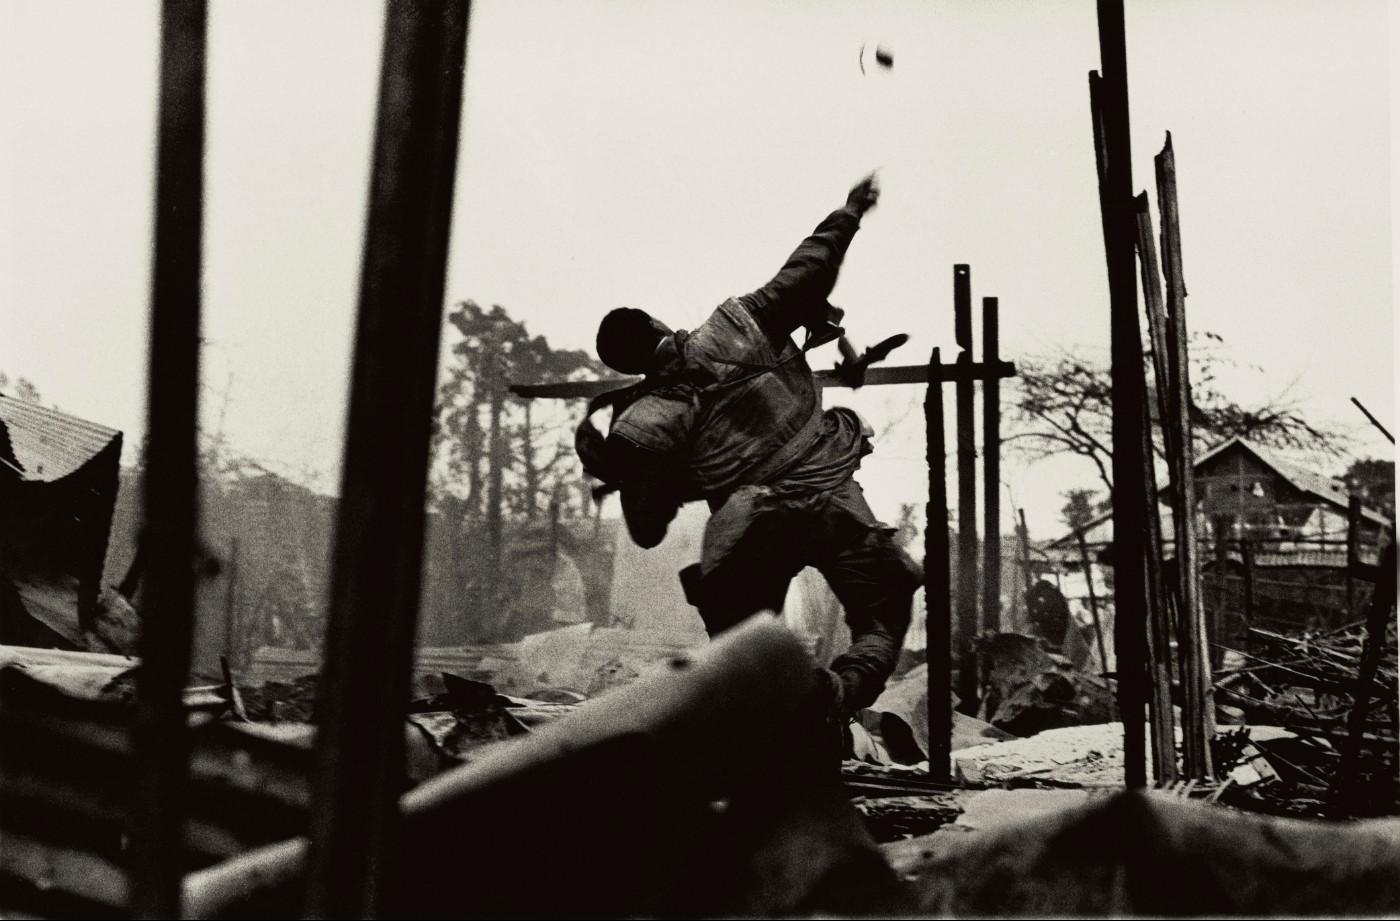 Don McCullin, Grenade Thrower, Hue, Vietnam, 1968